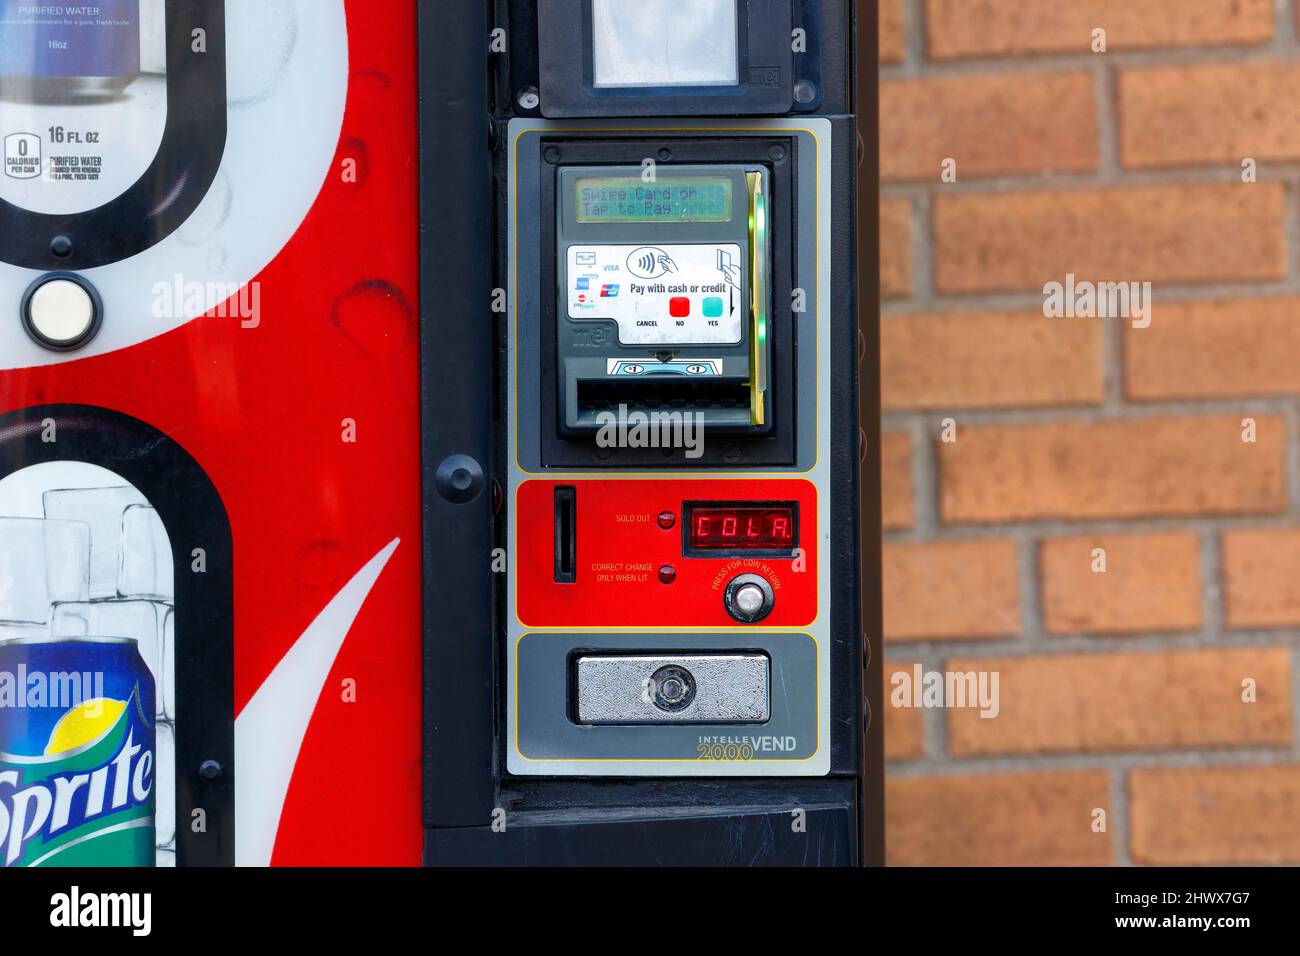 Herkömmliche Bargeldzahlungen und bargeldlose, kontaktlose Kreditkartenzahlungen an einem Getränkeautomaten. Stockfoto